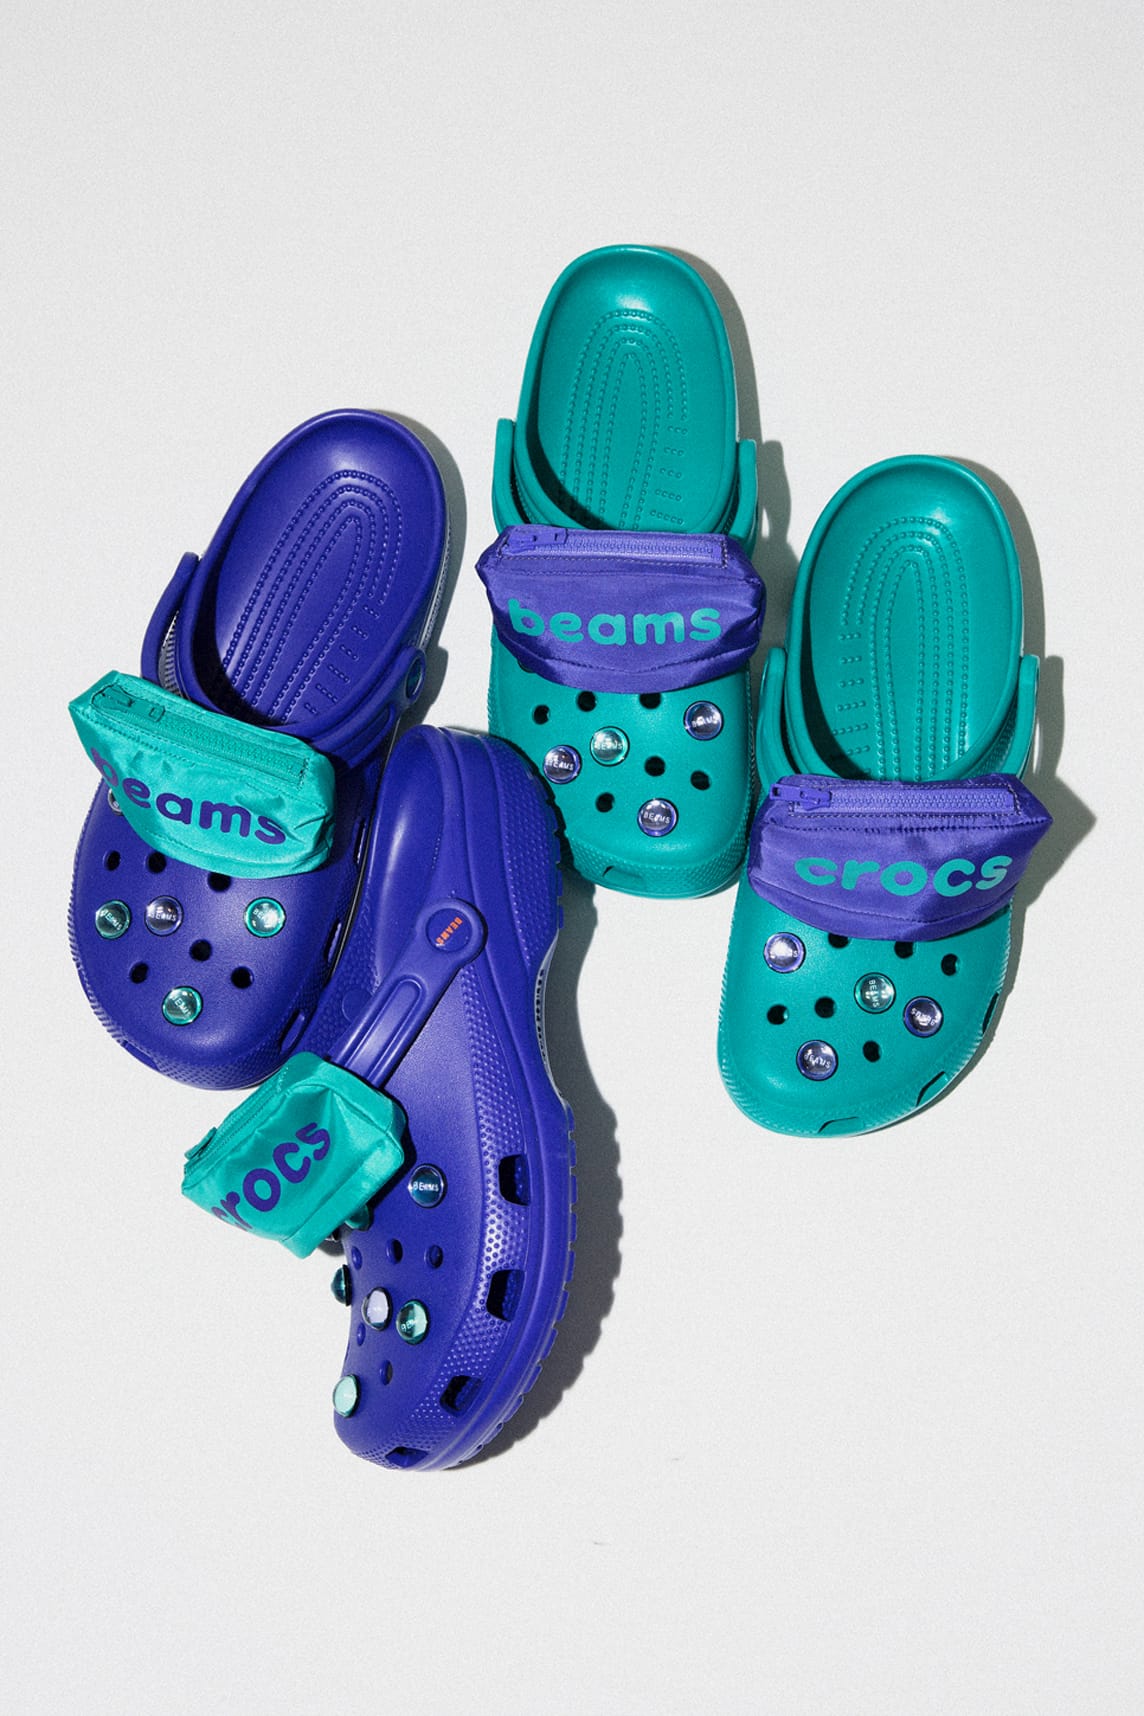 BEAMS x Crocs Release Footwear 